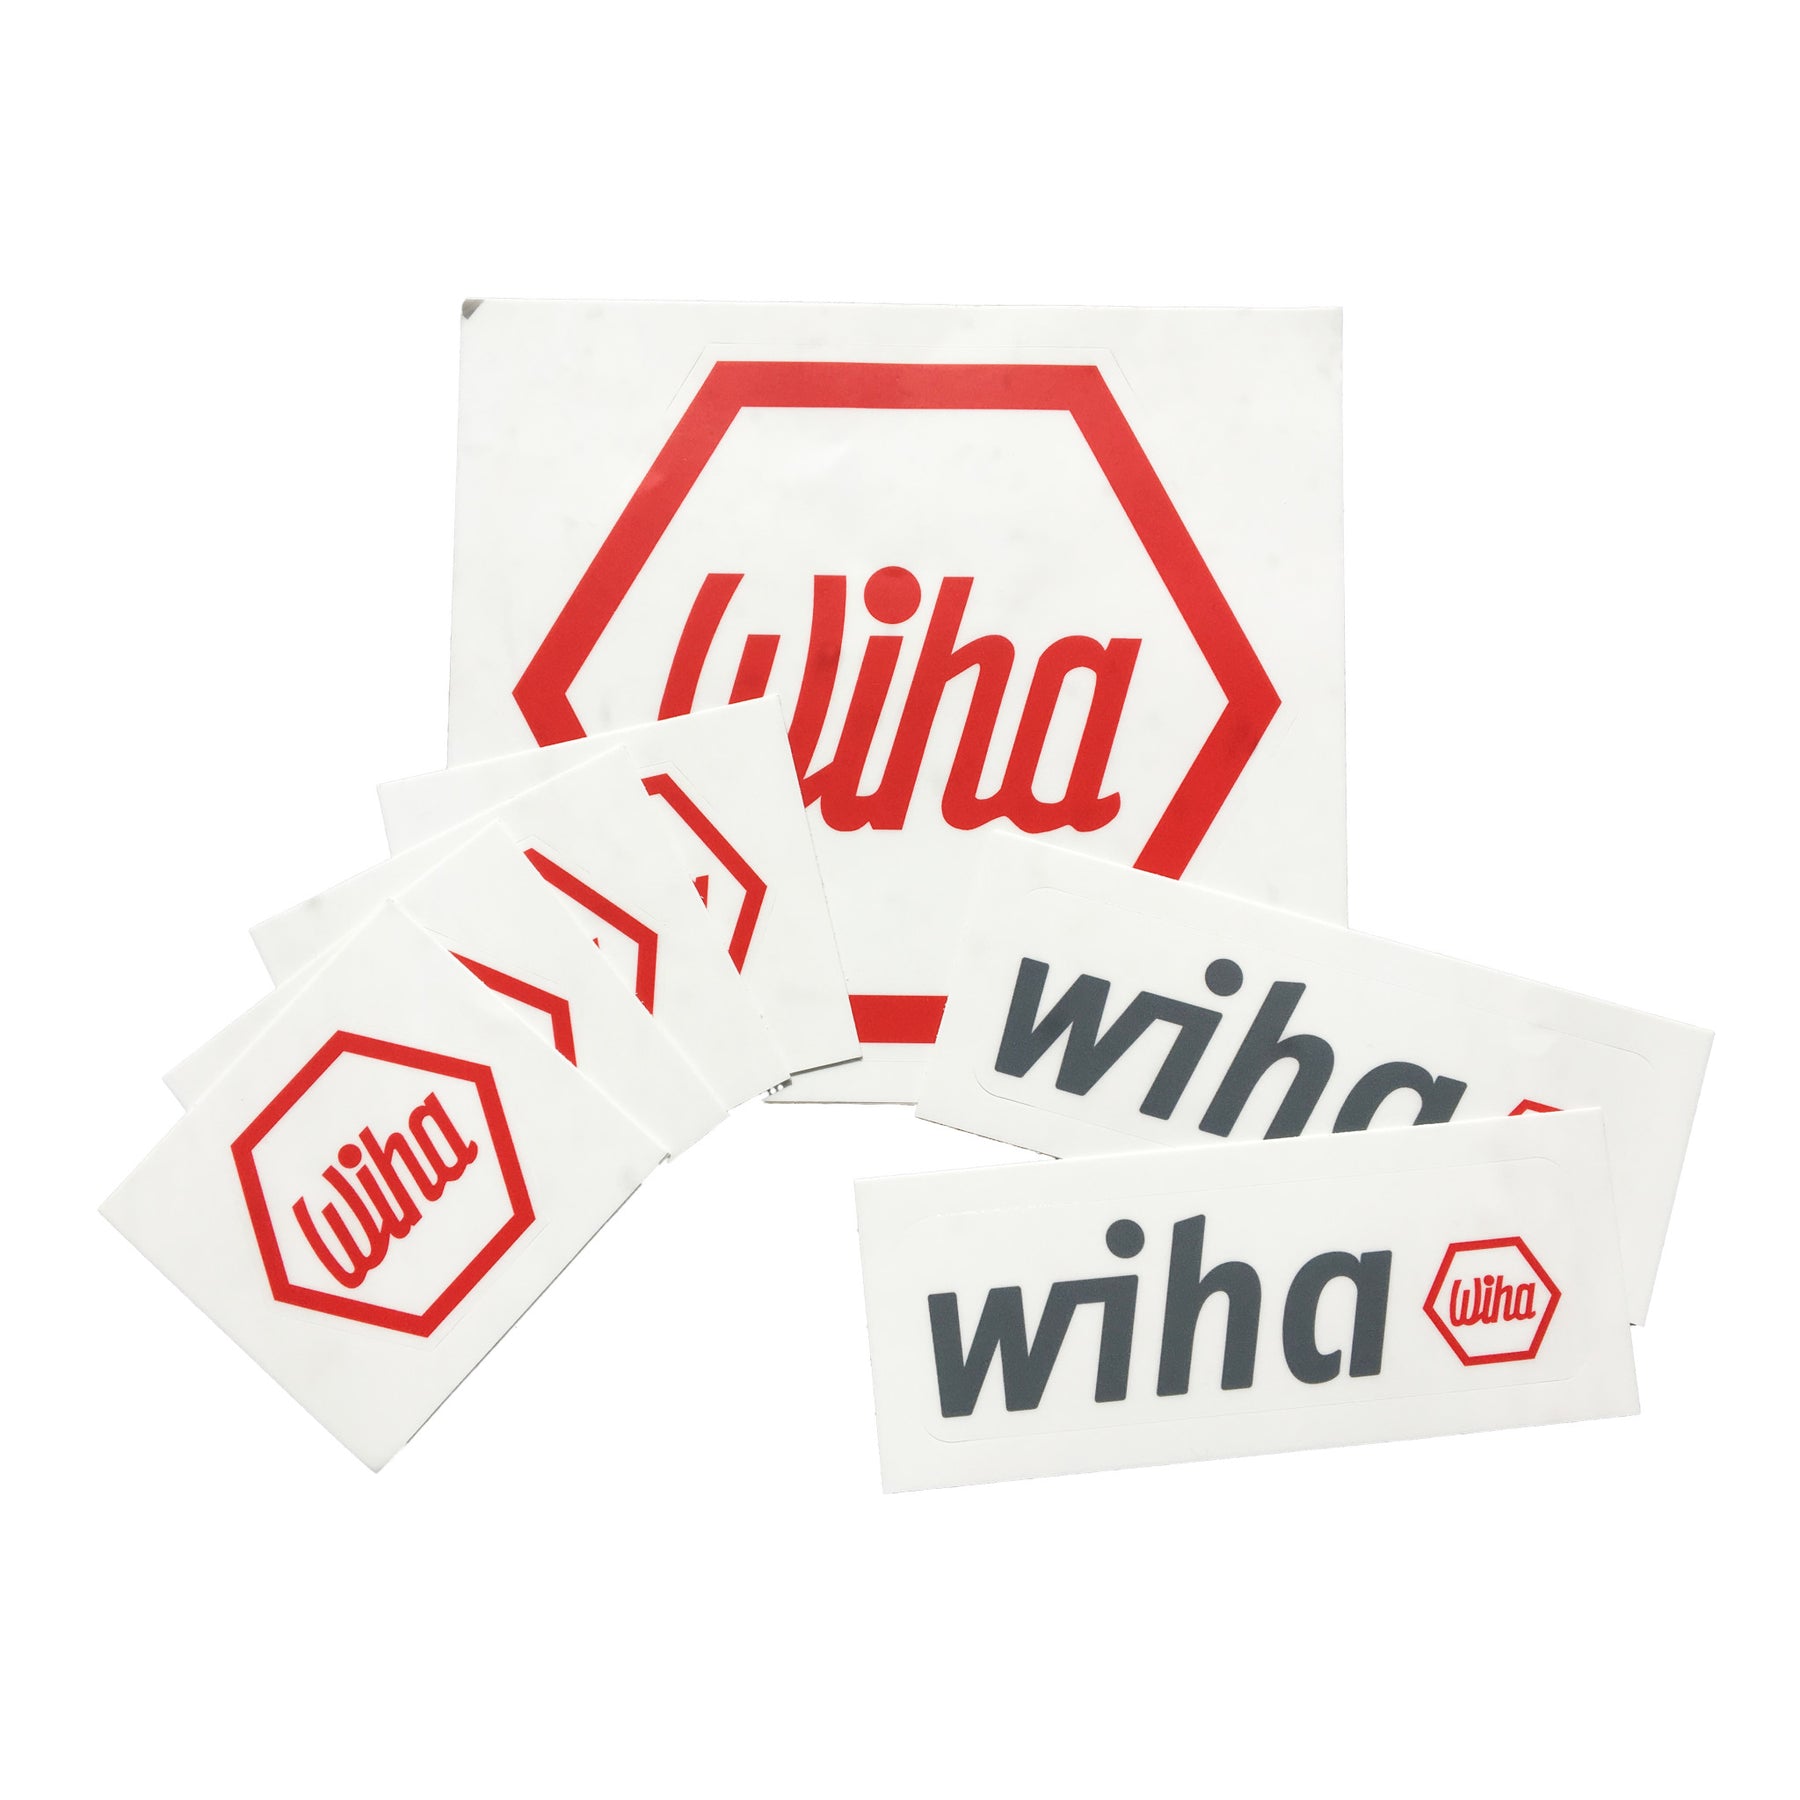 Wiha Sticker Pack